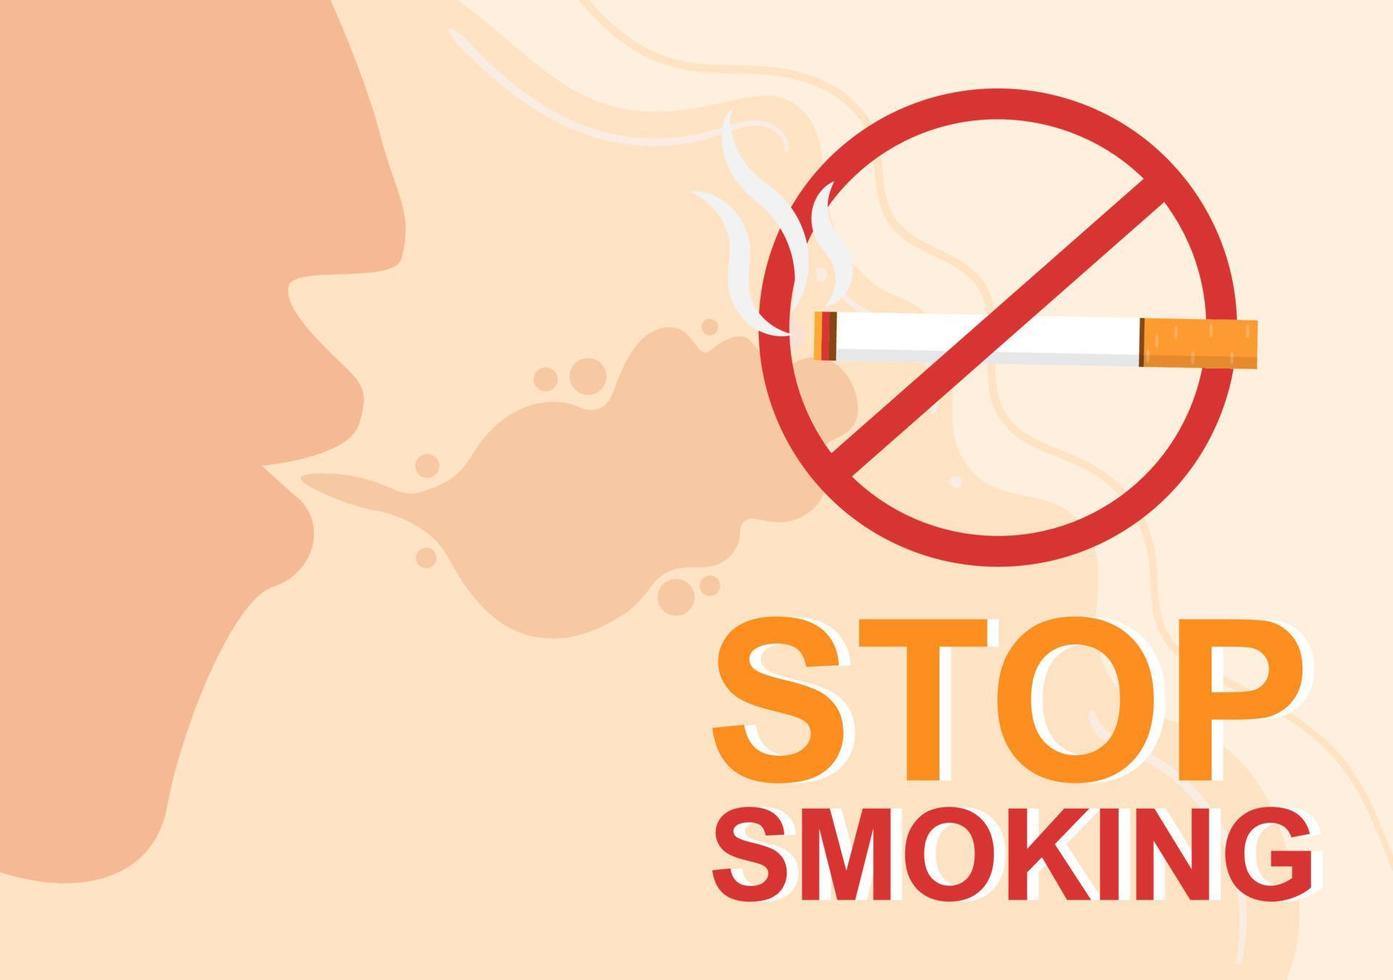 pare de fumar ou não cigarros para lutar contra o hábito de fumar insalubre, médico e como um aviso prévio na ilustração plana dos desenhos animados vetor